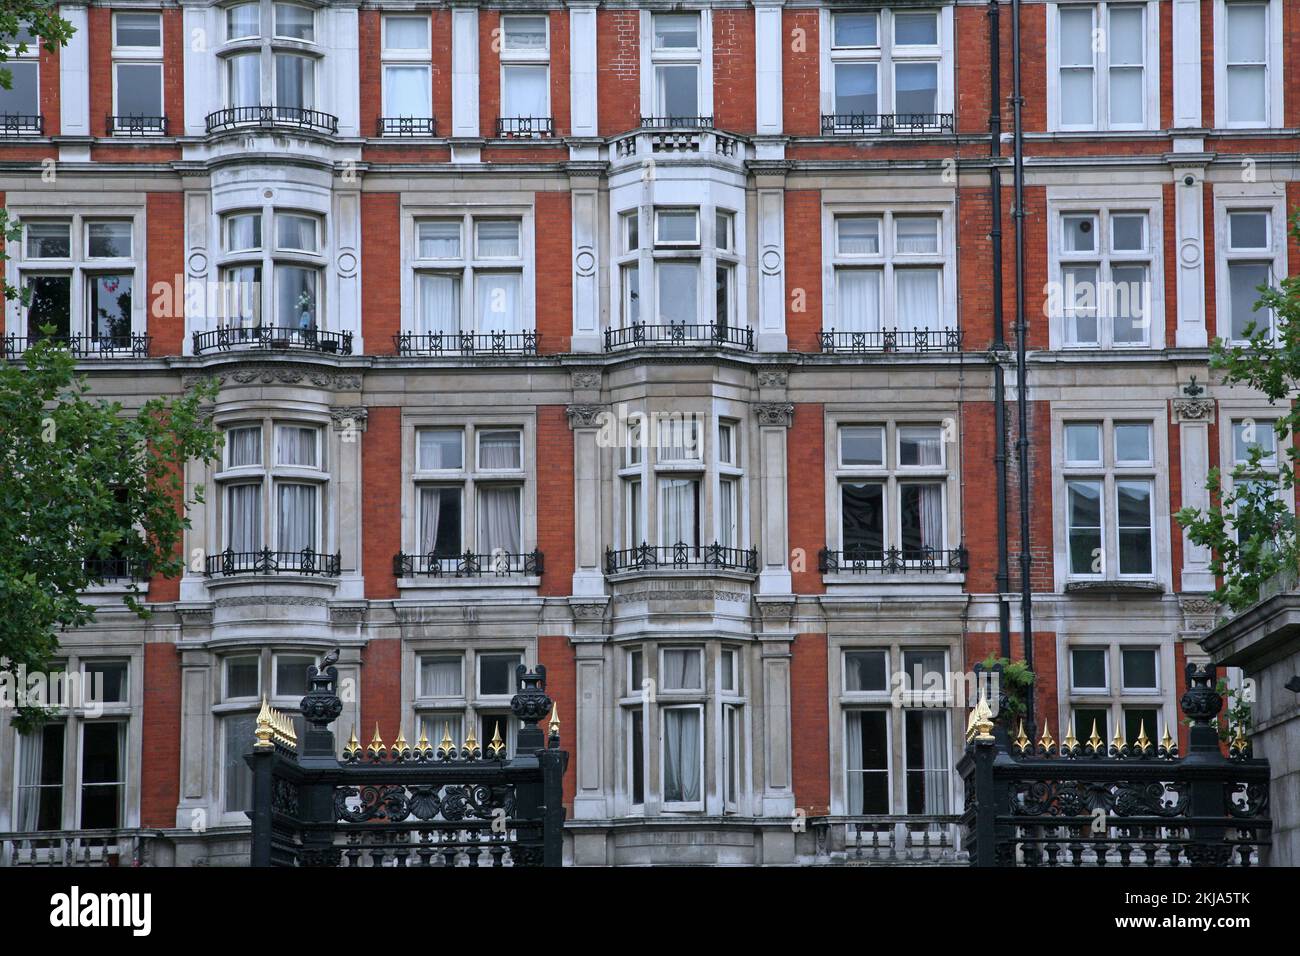 Élégant immeuble d'appartements, brique rouge avec bordure en pierre autour des baies vitrées, quartier de Bloomsbury à Londres Banque D'Images